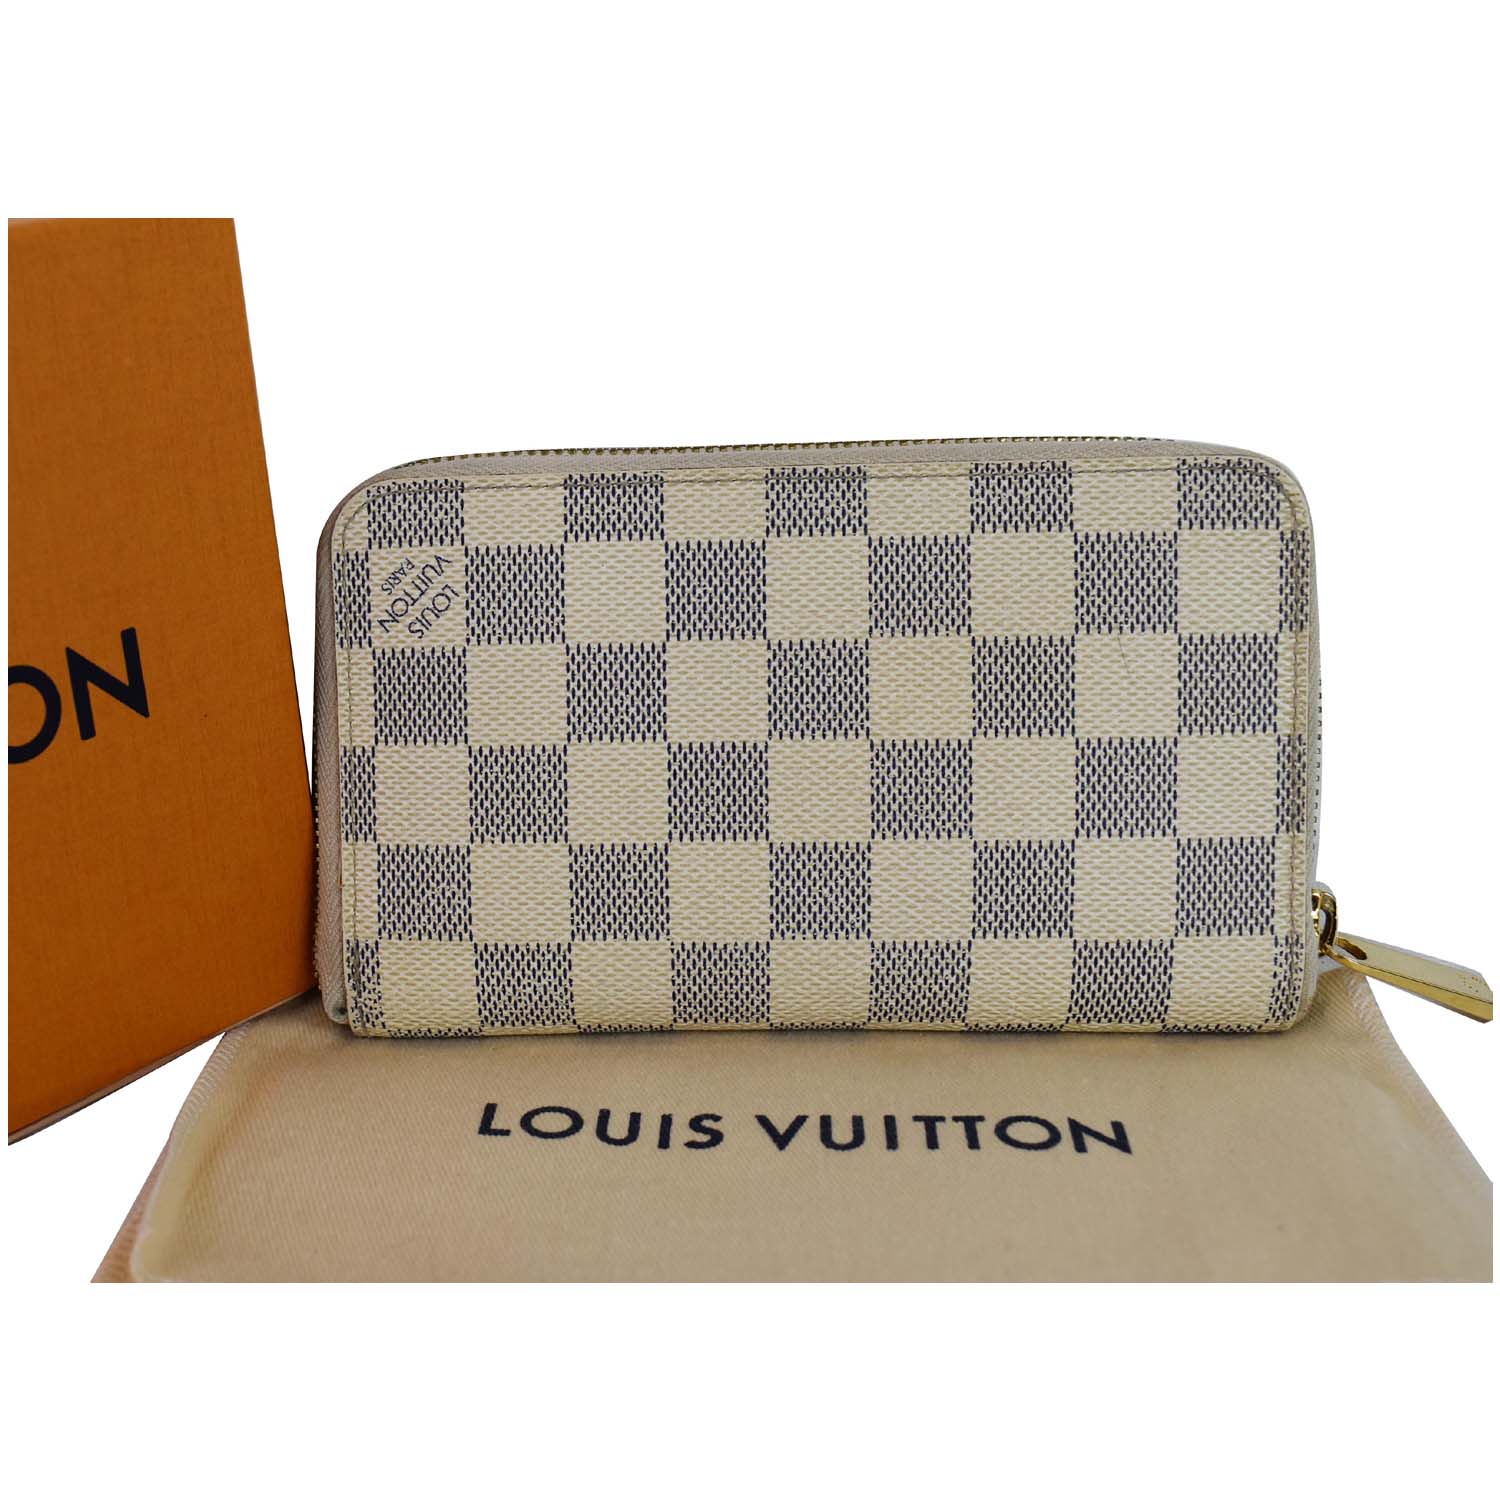 Louis Vuitton - Zippy Organizer ($875) - avail in monogram, damier, blk  damier, white…